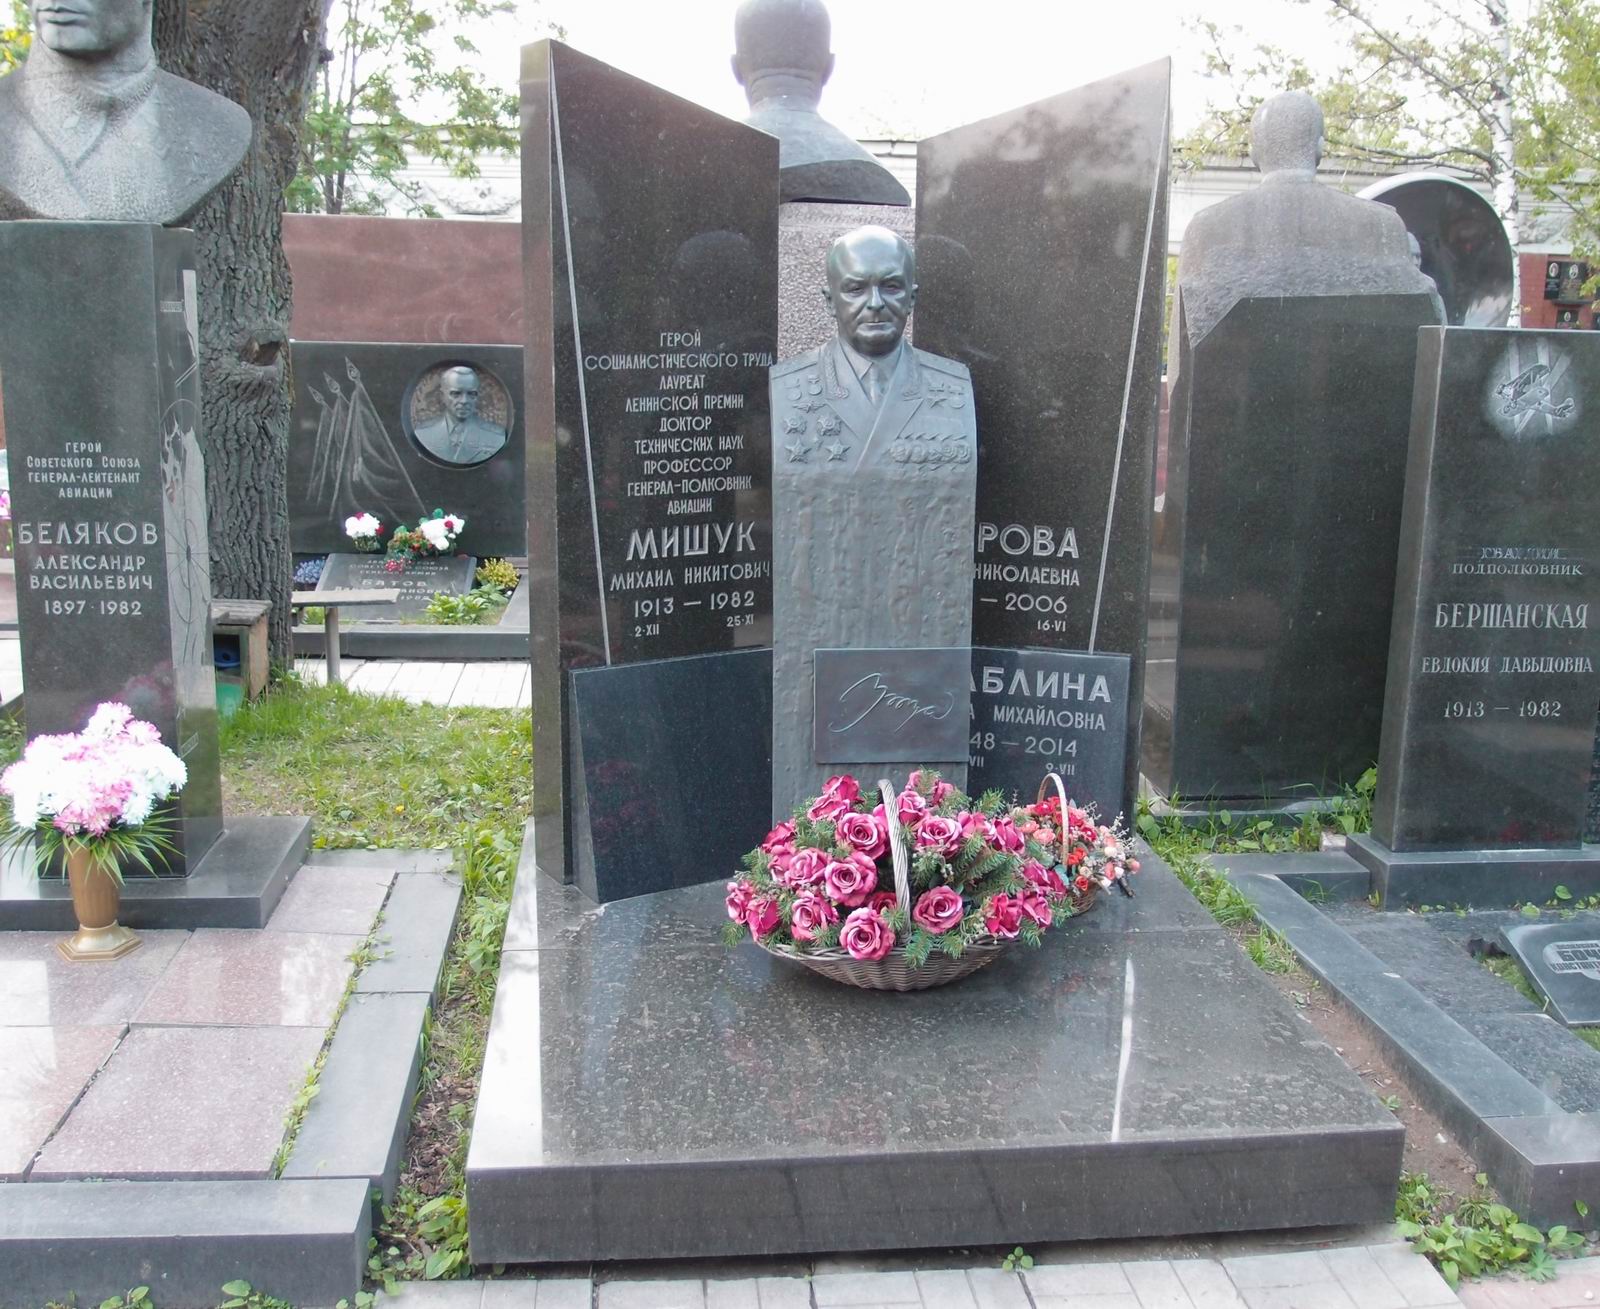 Памятник на могиле Мишука М.Н. (1913-1982), ск. А.Елецкий, арх. Е.Ефремов, на Новодевичьем кладбище (7-19-14).